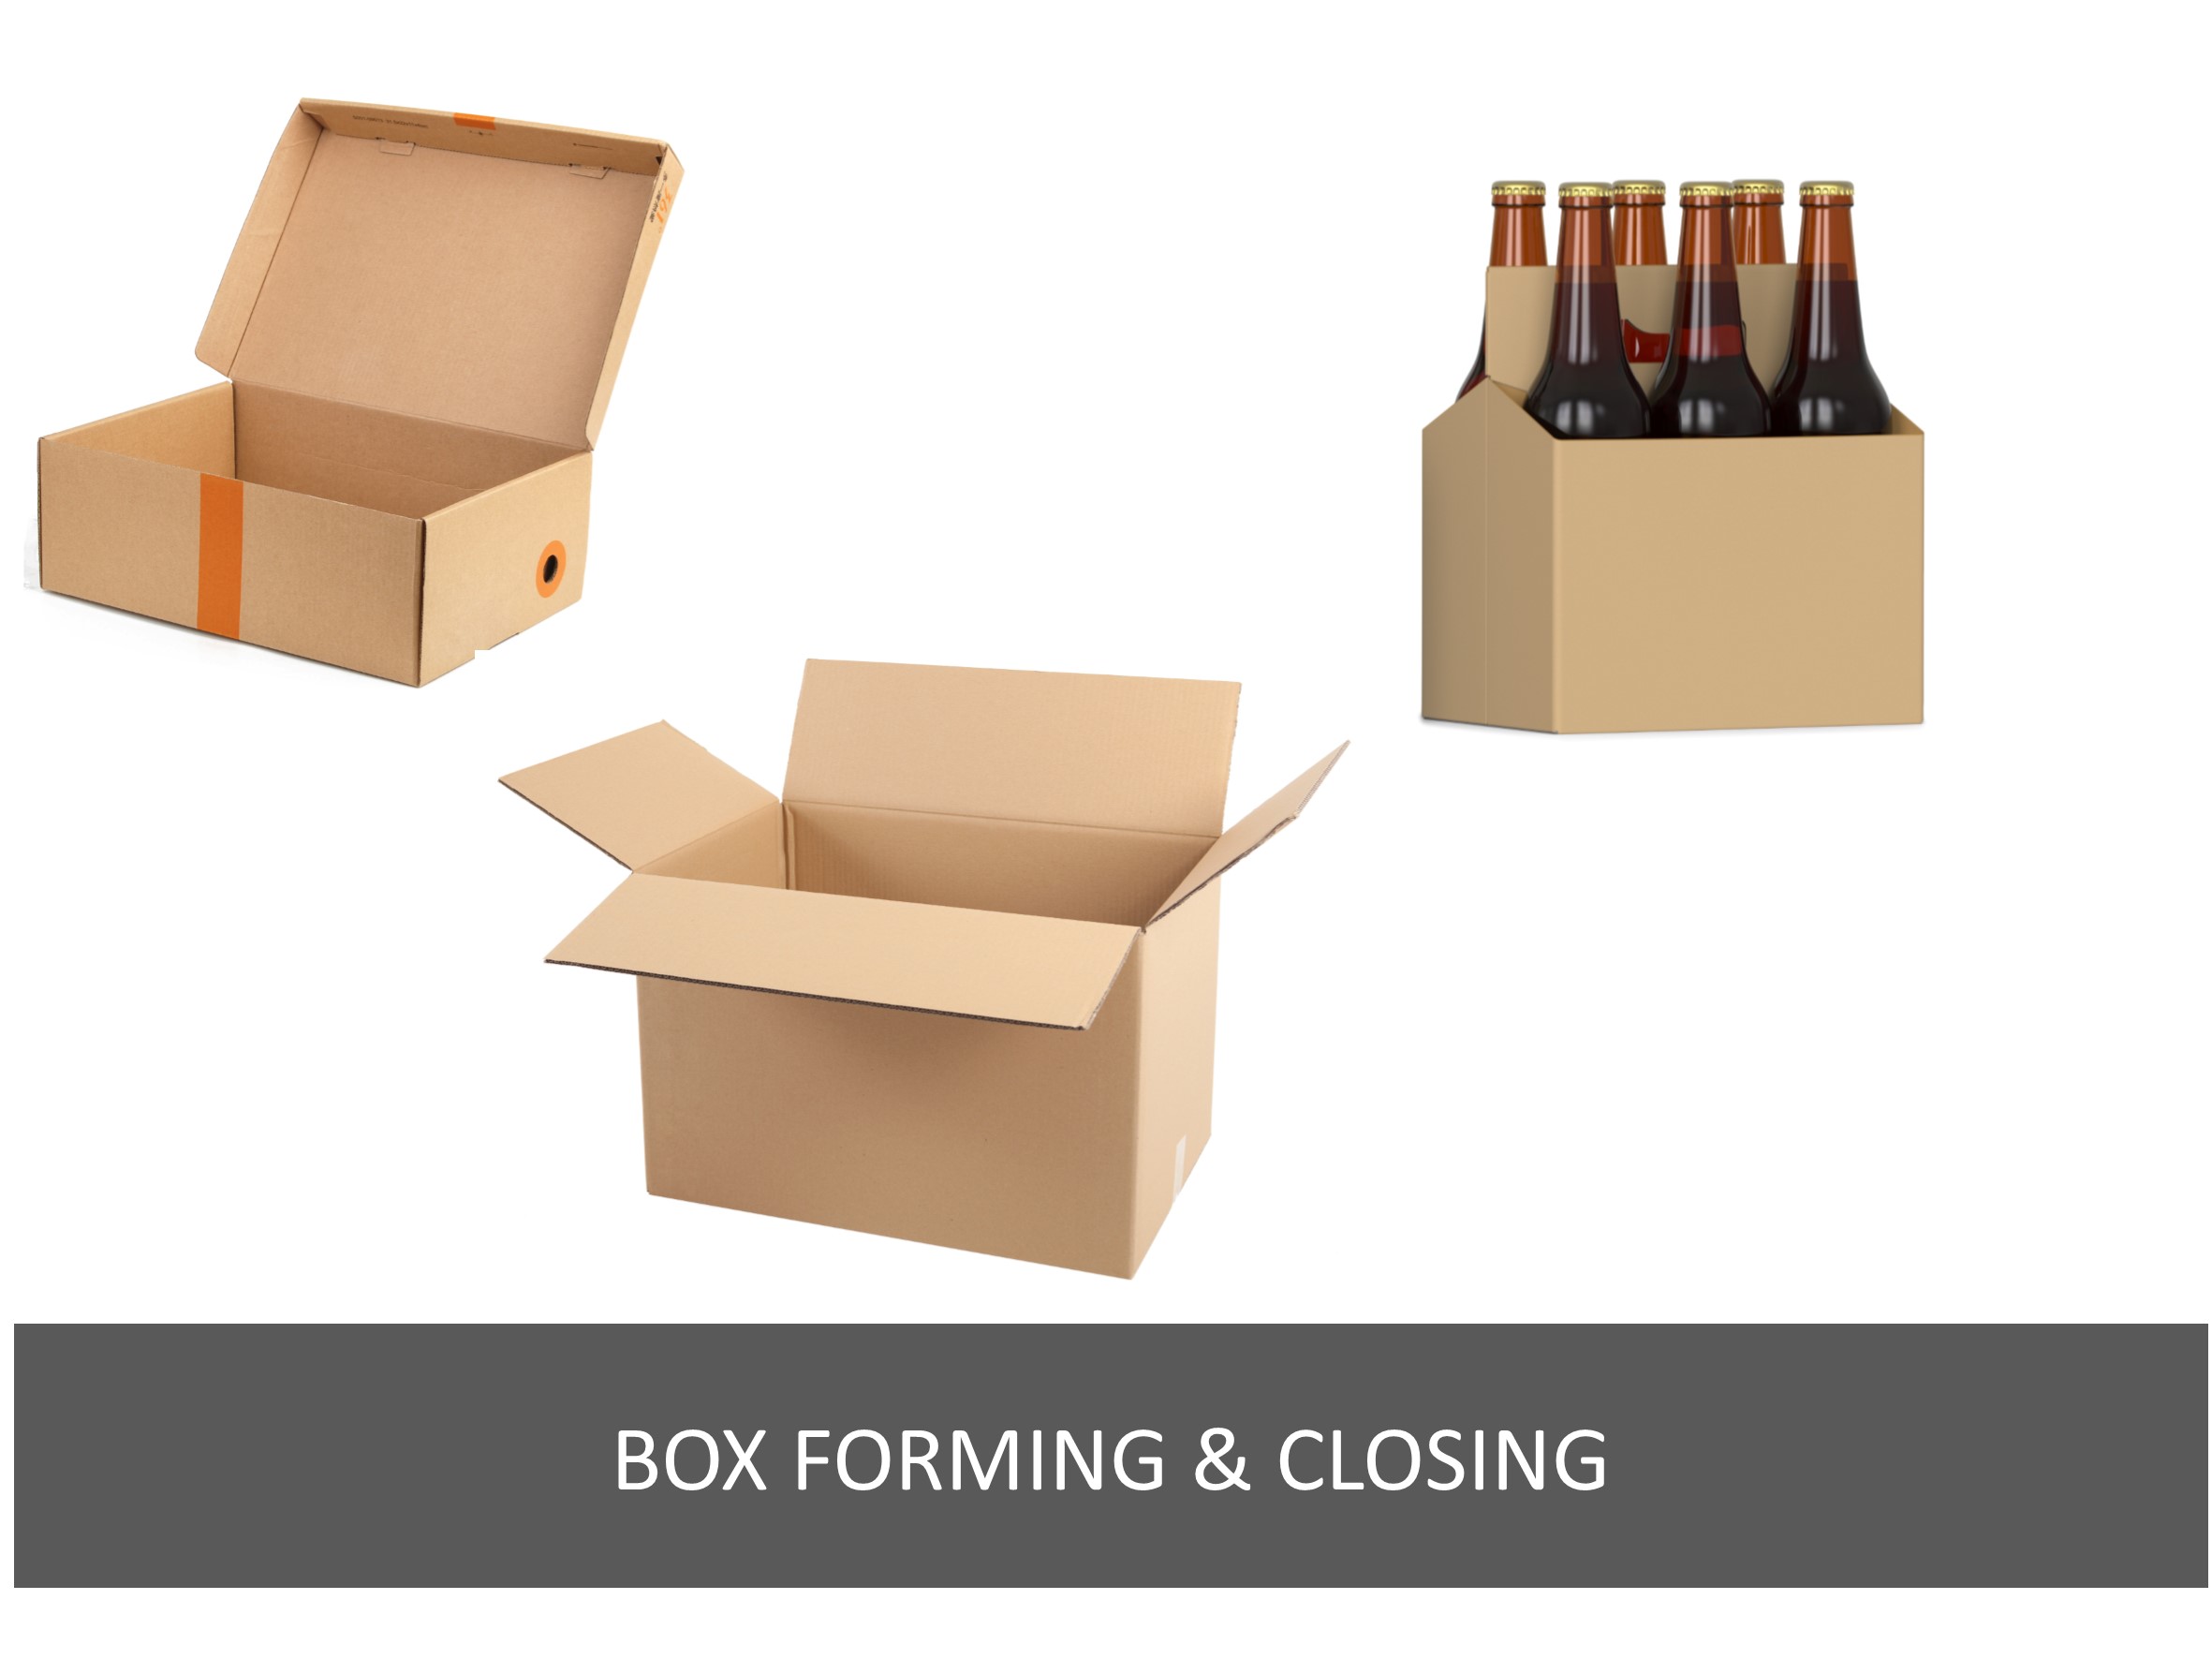 Box forming & closing